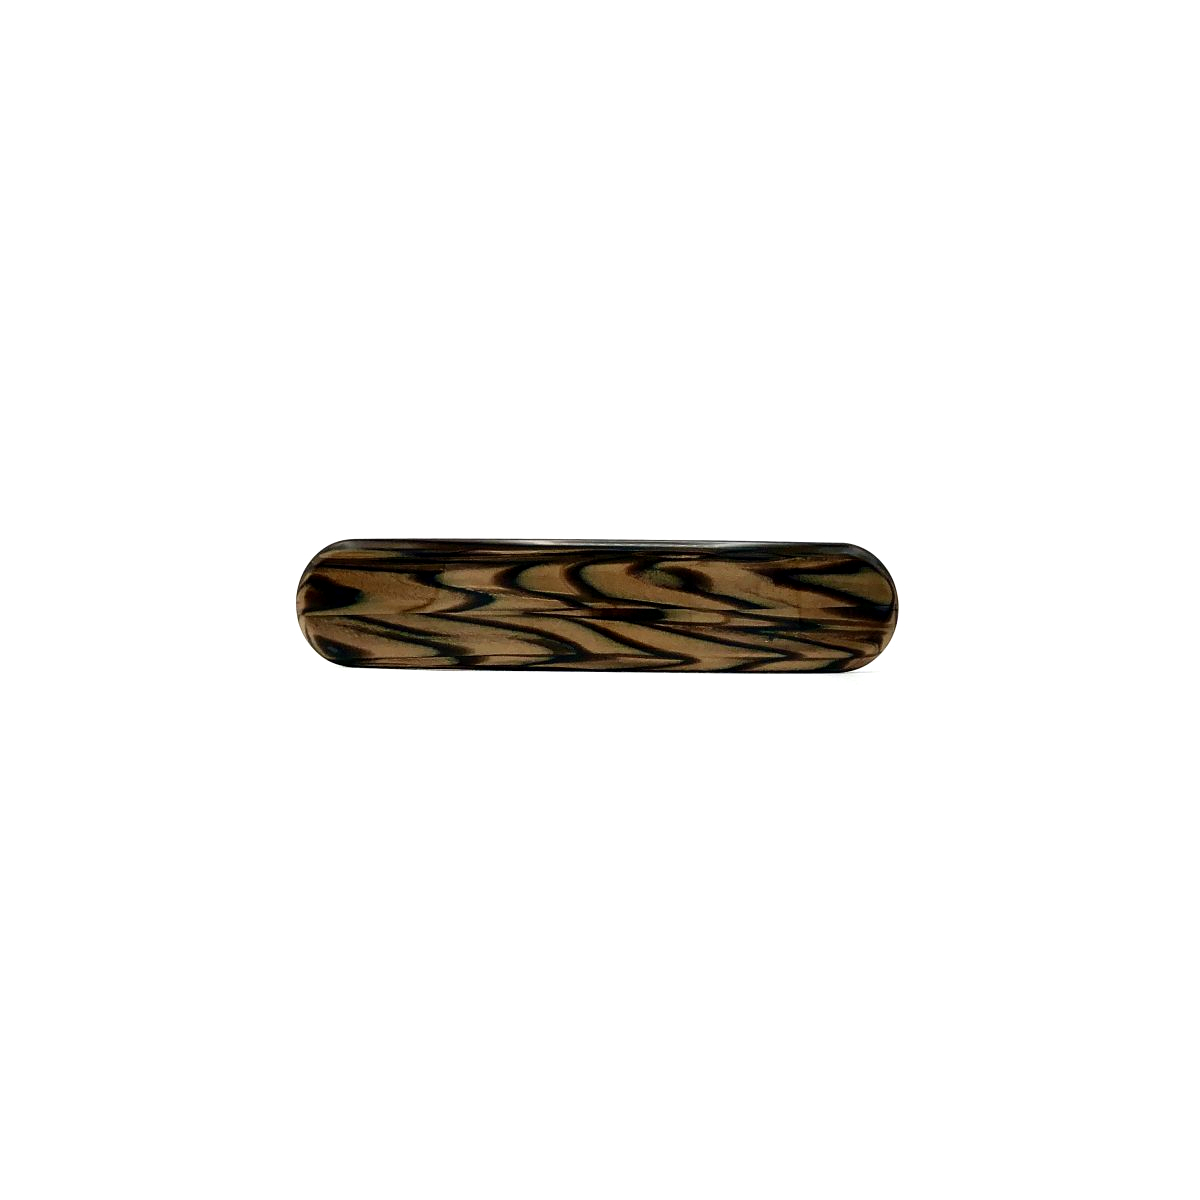 Haarspange dunkelbraun - klein, paralleloval - 7,7 cm